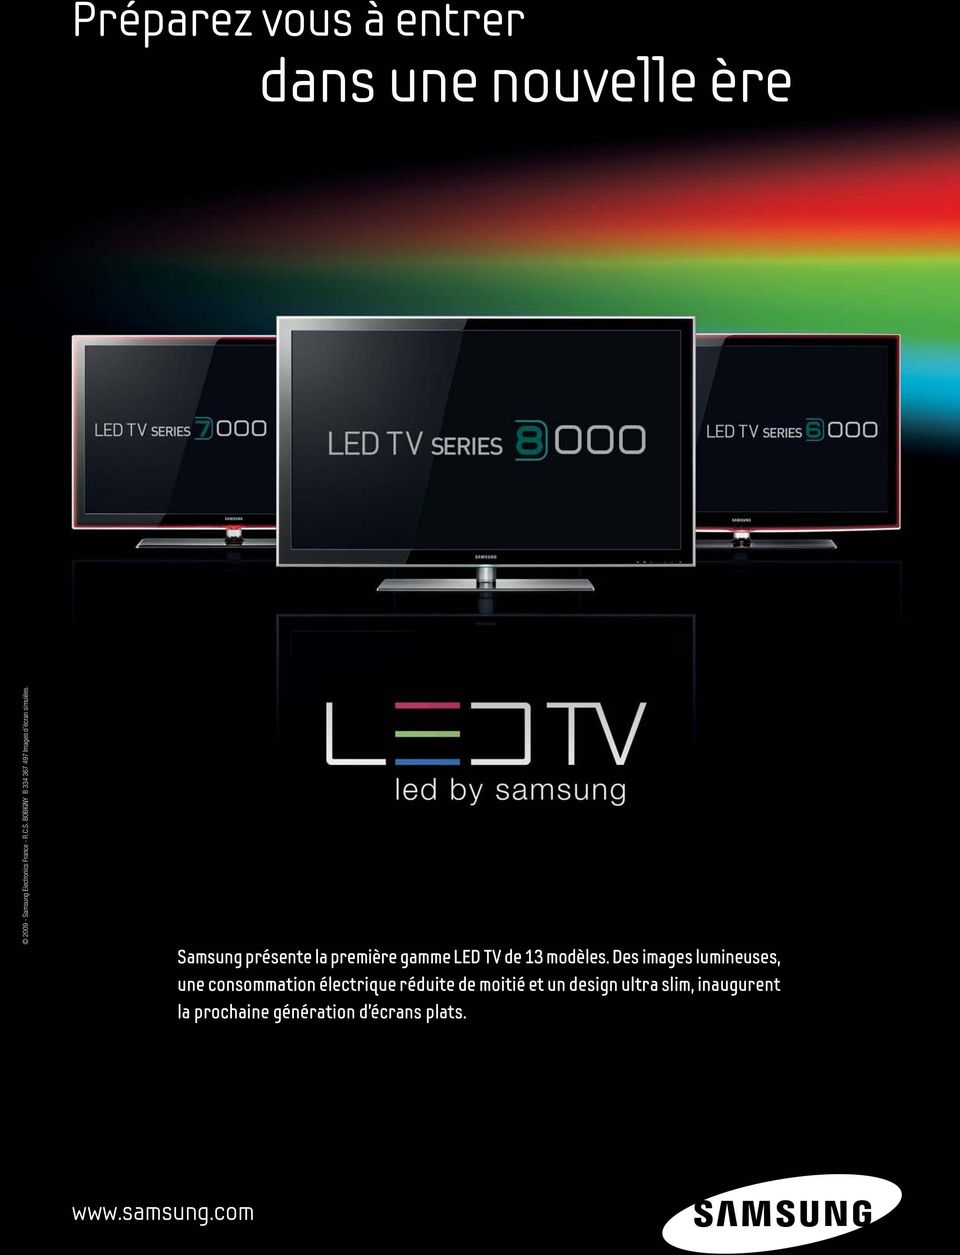 Samsung présente la première gamme LED TV de 13 modèles.